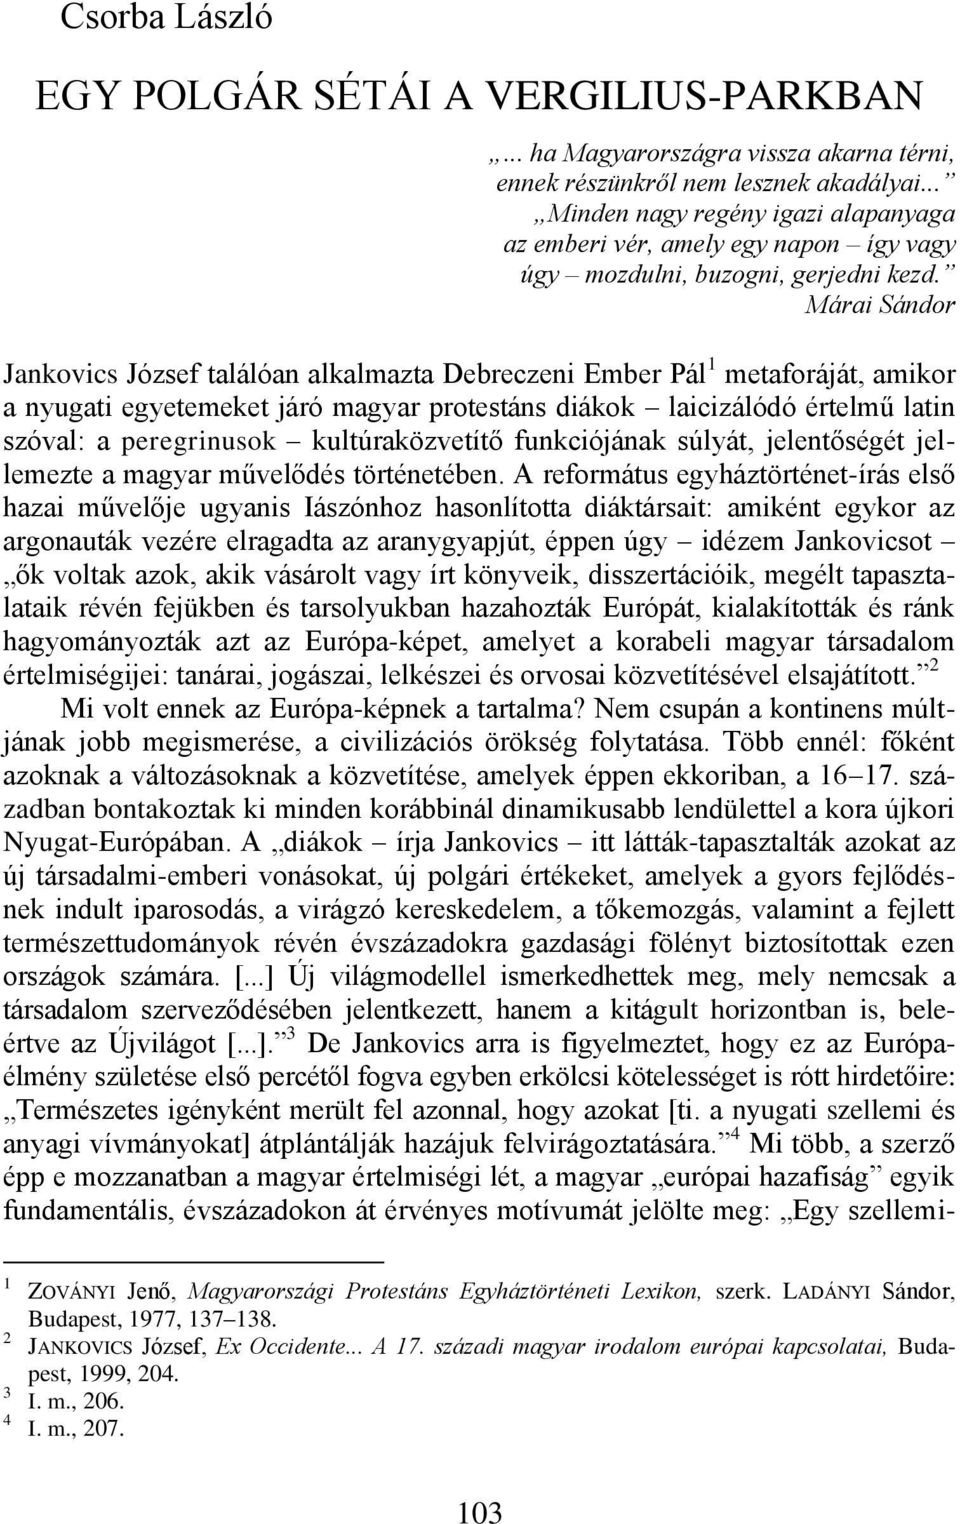 Márai Sándor Jankovics József találóan alkalmazta Debreczeni Ember Pál 1 metaforáját, amikor a nyugati egyetemeket járó magyar protestáns diákok laicizálódó értelmű latin szóval: a peregrinusok